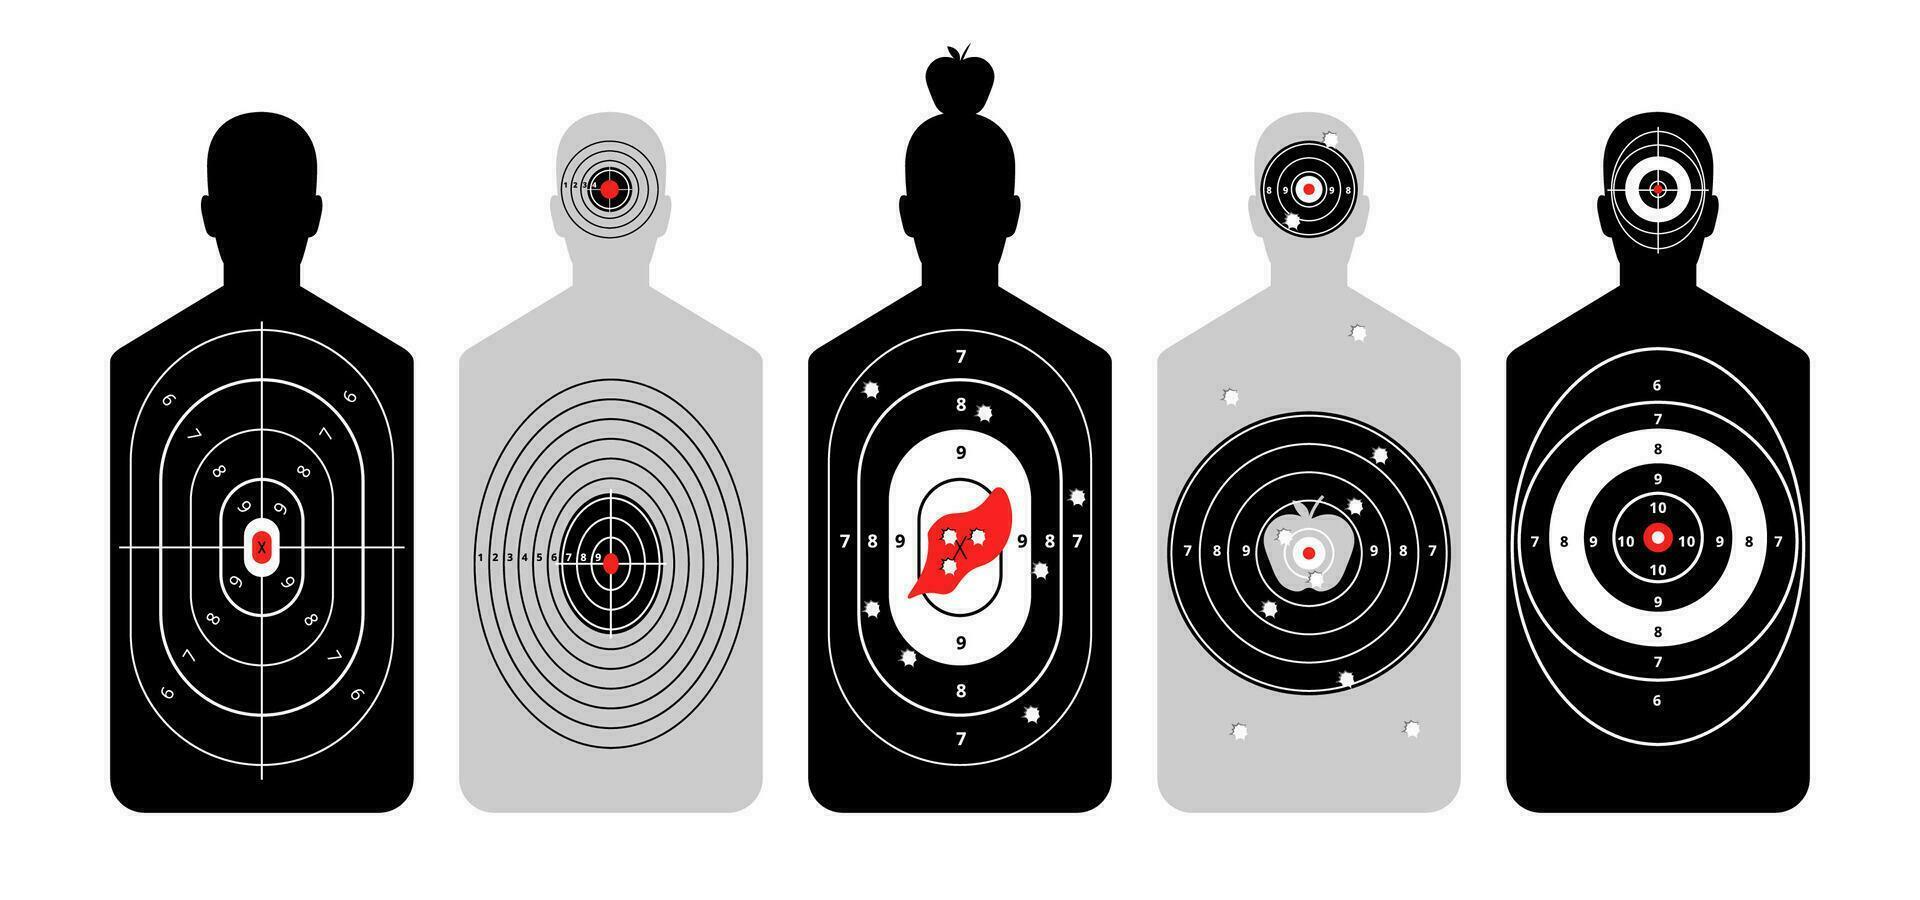 objetivos para disparo con humano silueta. formación figura con resumido círculos y números de puntos para golpear formación en disparo desde armas de fuego y vector arco.